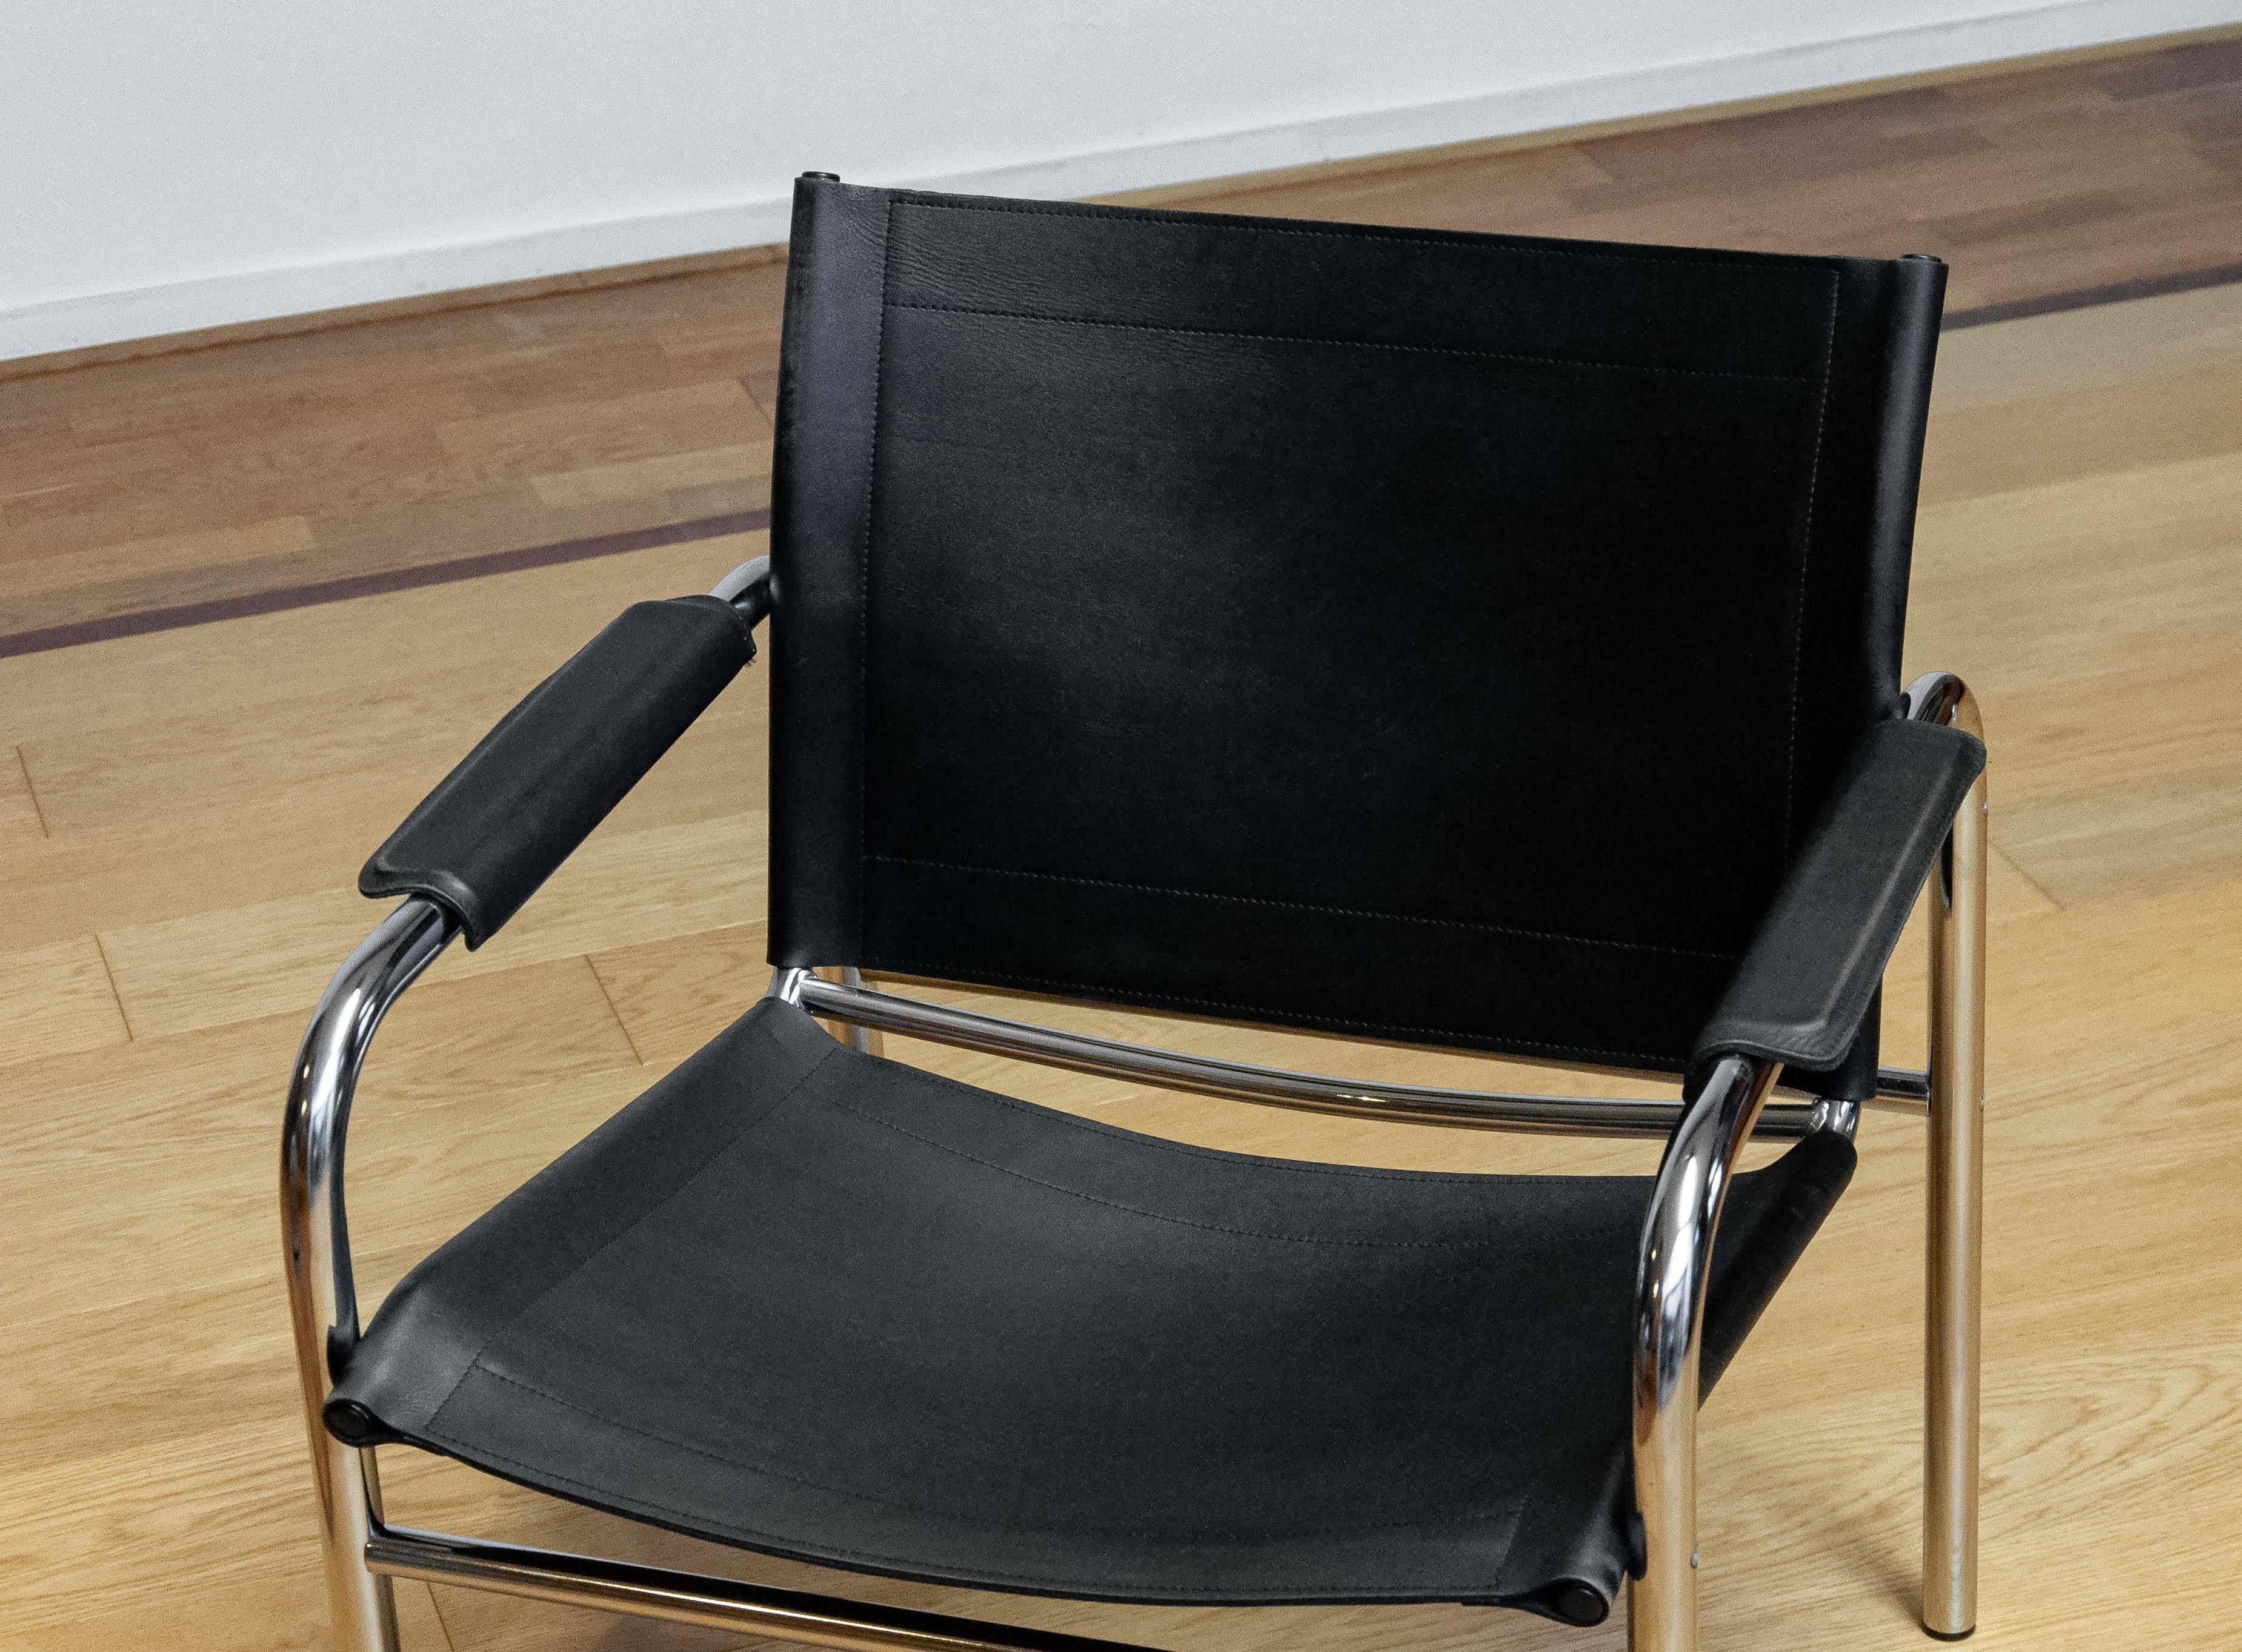 Schwarzer Ledersessel, Modell Klinte, entworfen von Tord Bjorklund, für Ikea in Schweden in den 1970er Jahren. Der Stuhl ist mit dickem Leder gepolstert und hat ein Gestell aus Chromstahl. 
Dieser 'Klinte'-Stuhl ist in einem insgesamt sehr guten